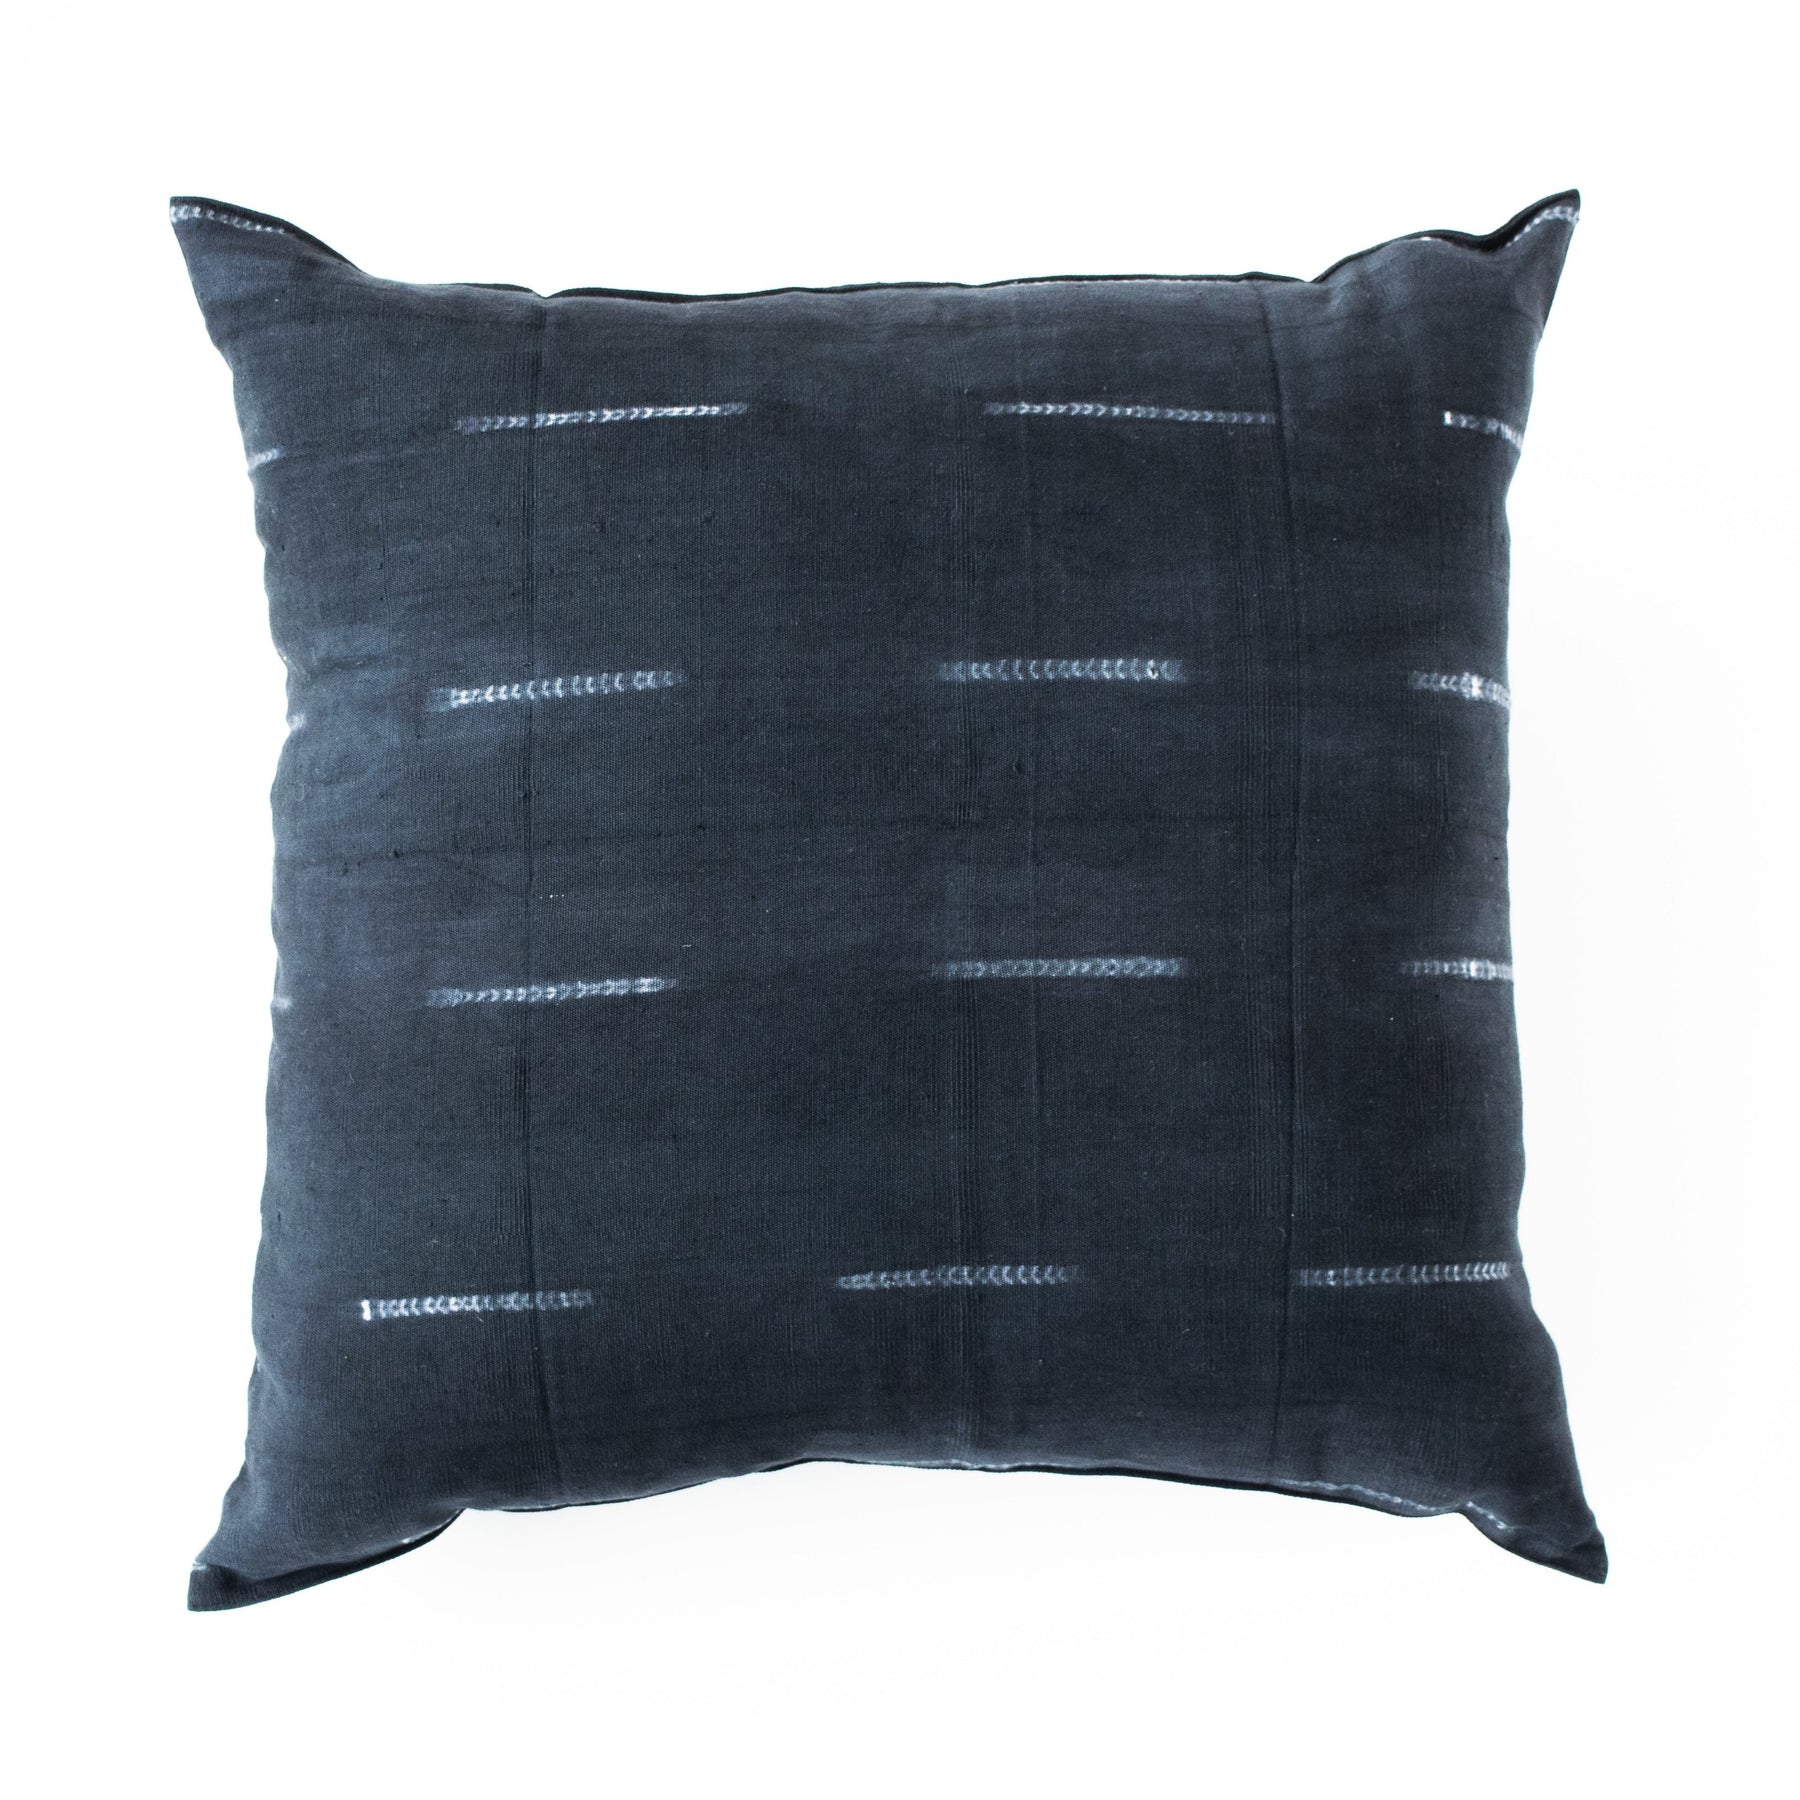 Indigo Pillow Covers – Stoffer Home